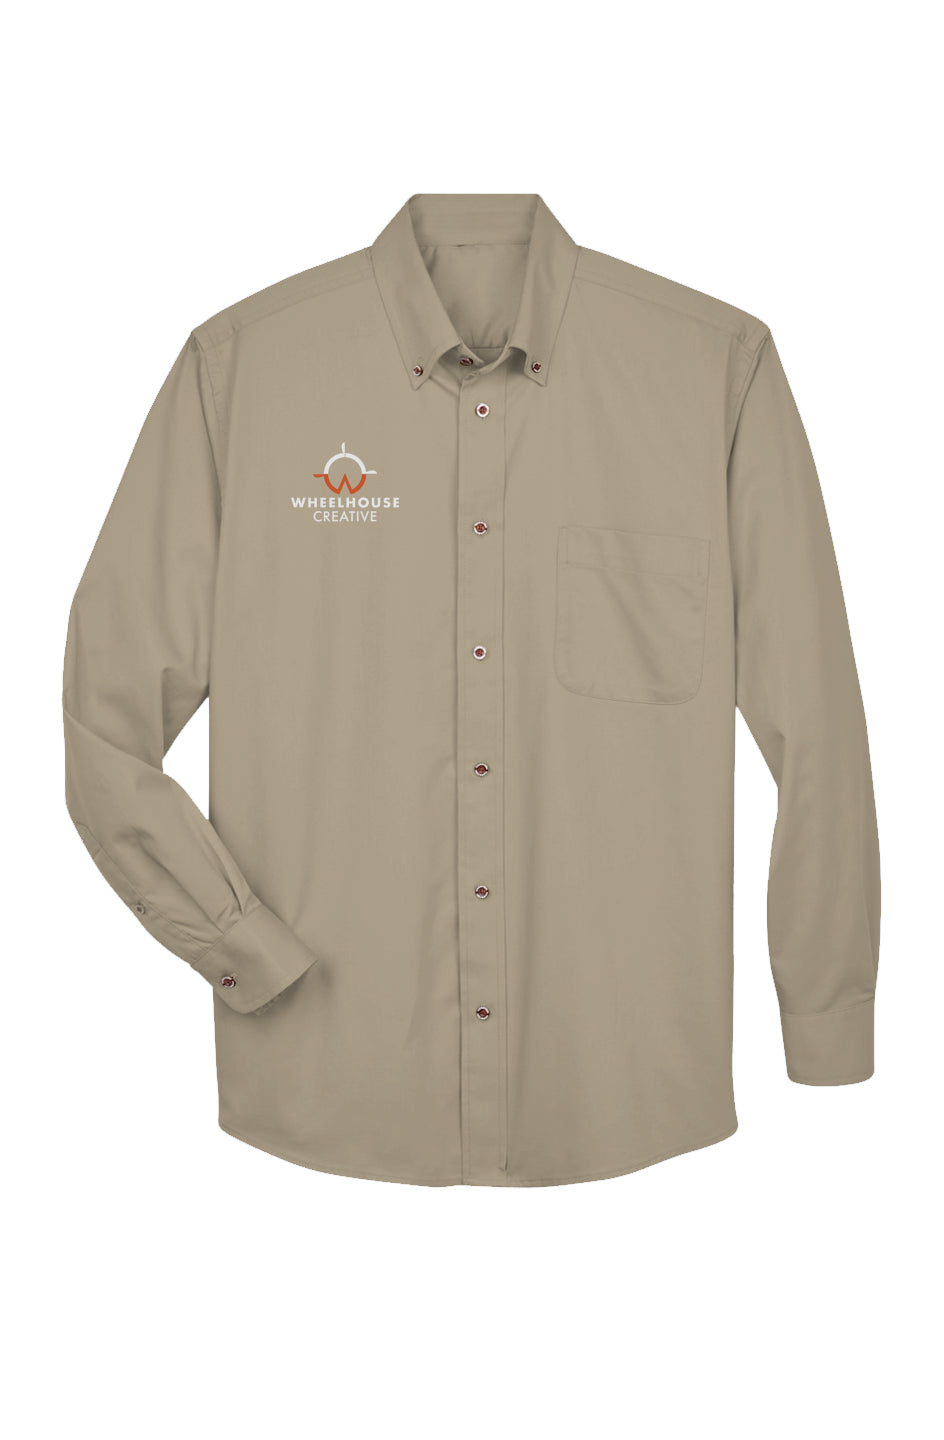 Wheelhouse Embroidered Unisex Long-Sleeve Twill Shirt